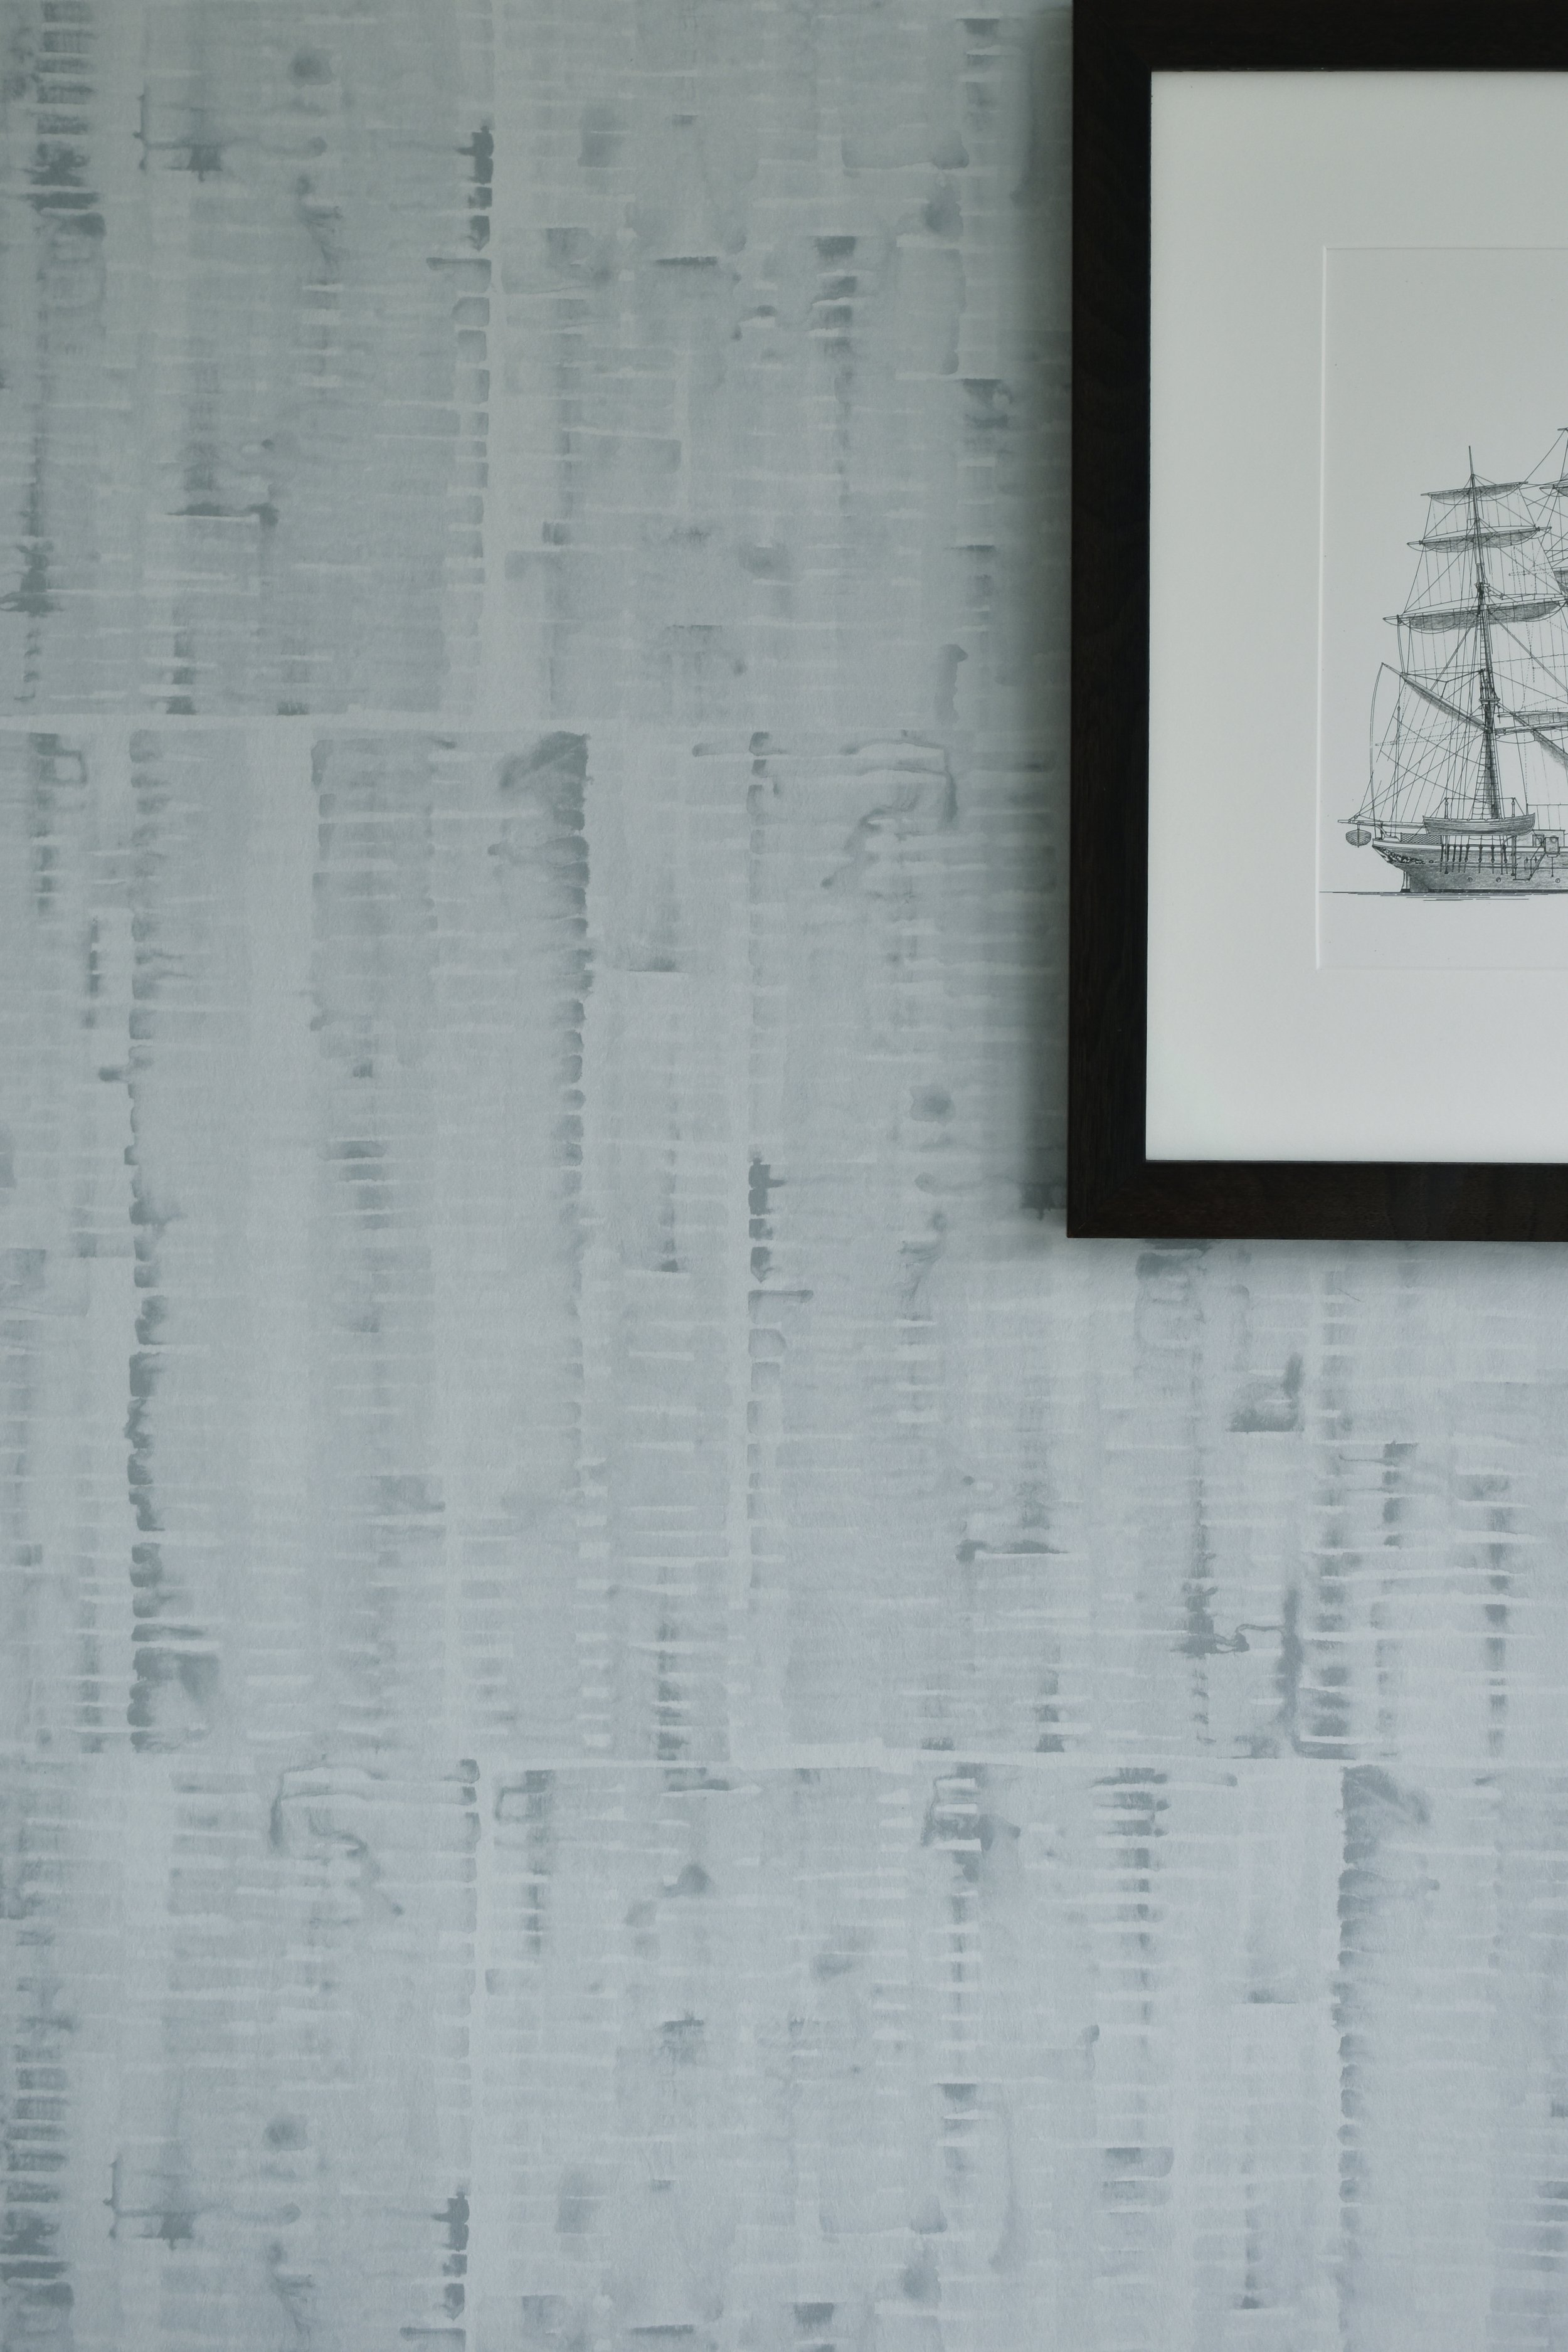 Gillian Wallpaper in Mist — sarah von dreele